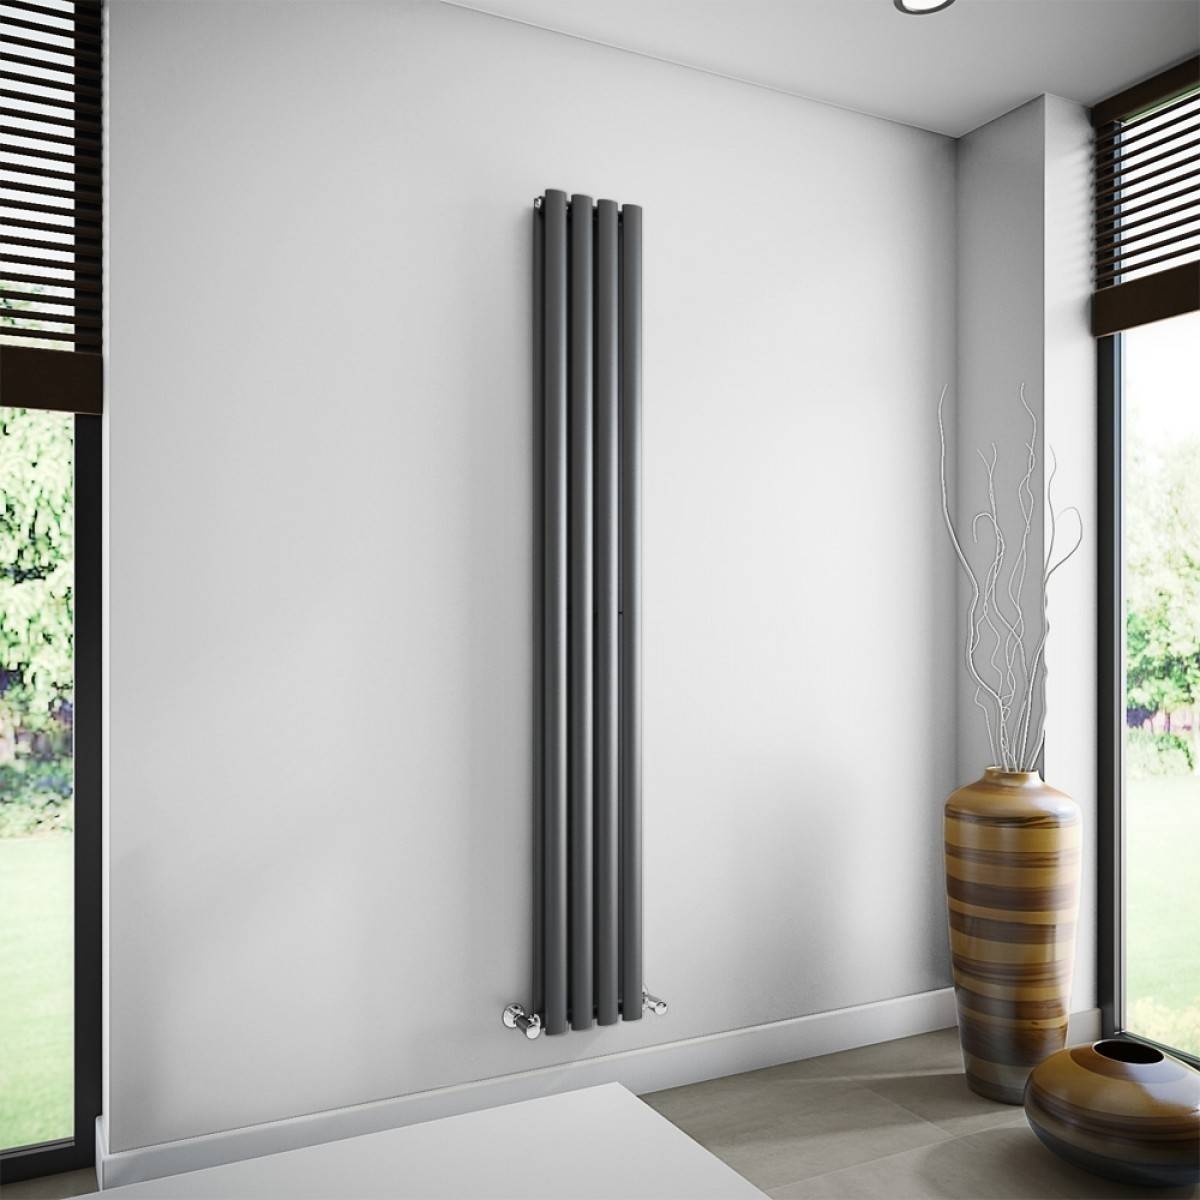 Напольный радиатор: критерии выбора для отопления дома, особенности и виды